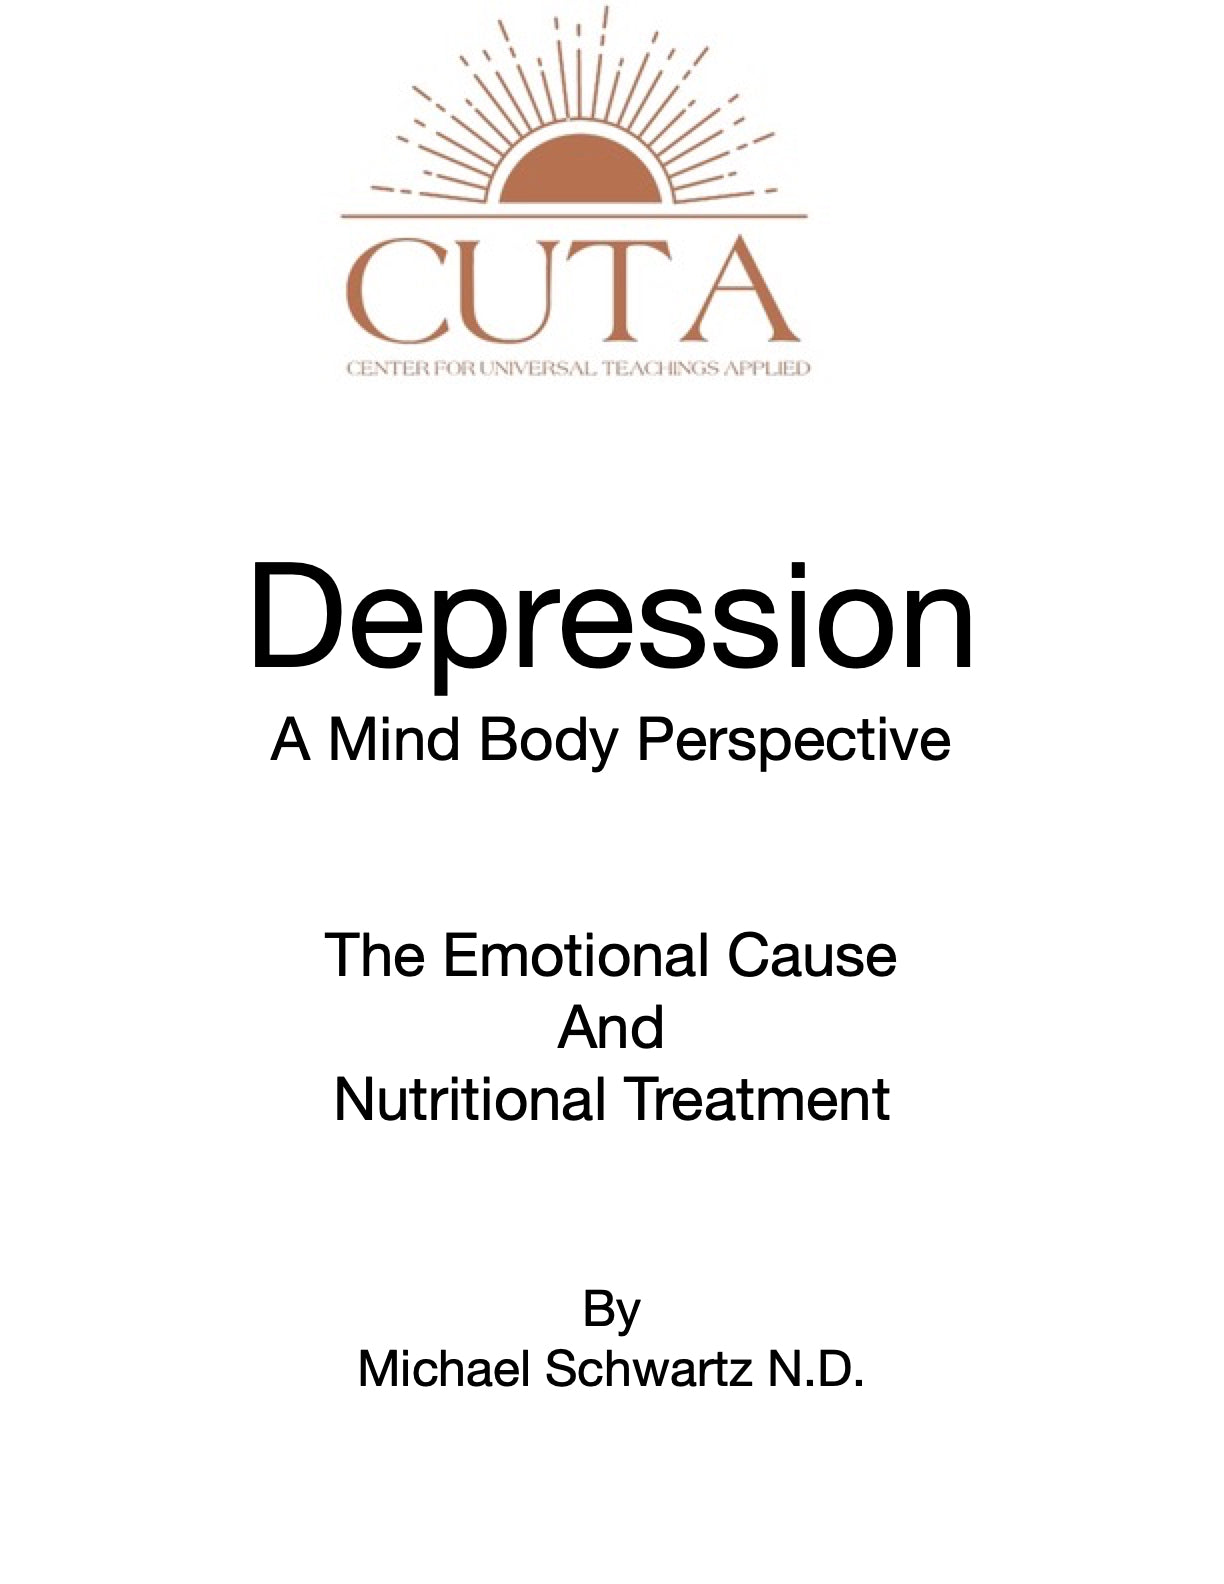 Depression Booklet